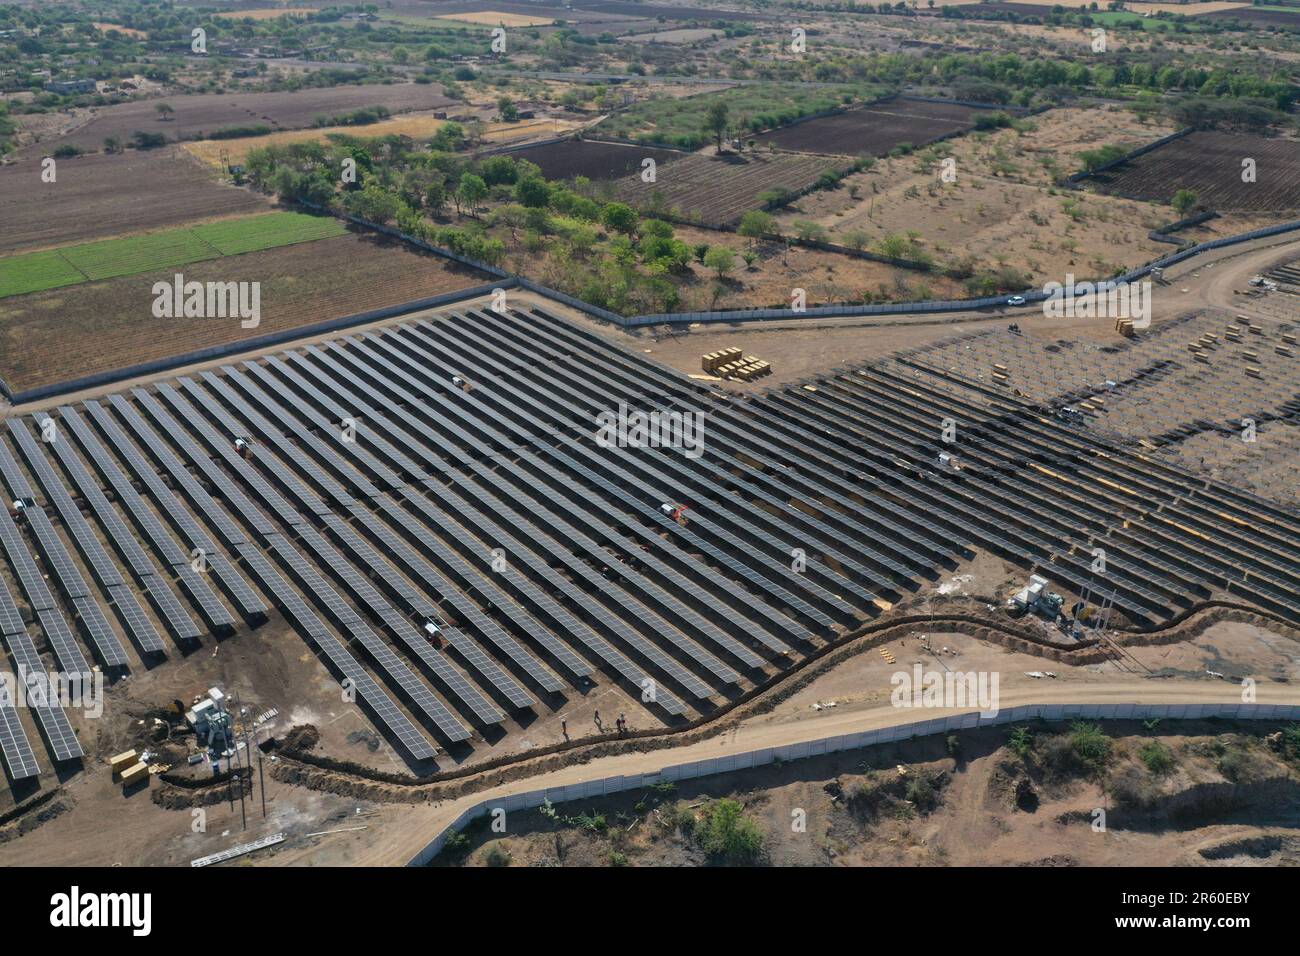 Une vue aérienne d'une grande ferme solaire avec un ensemble de panneaux solaires noirs disposés en rangées nettes Banque D'Images